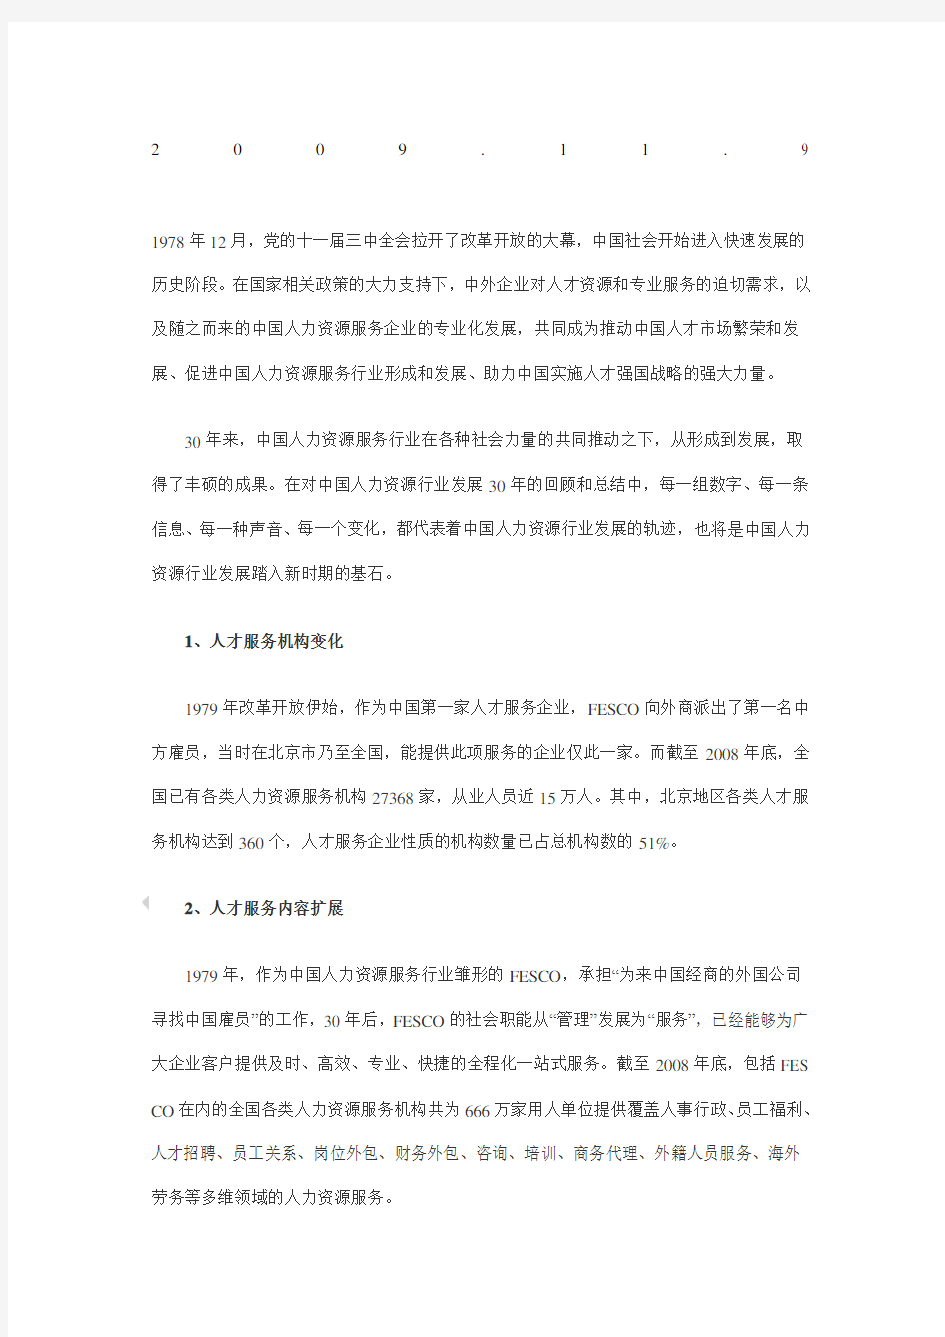 中国人力资源服务行业 发展报告 